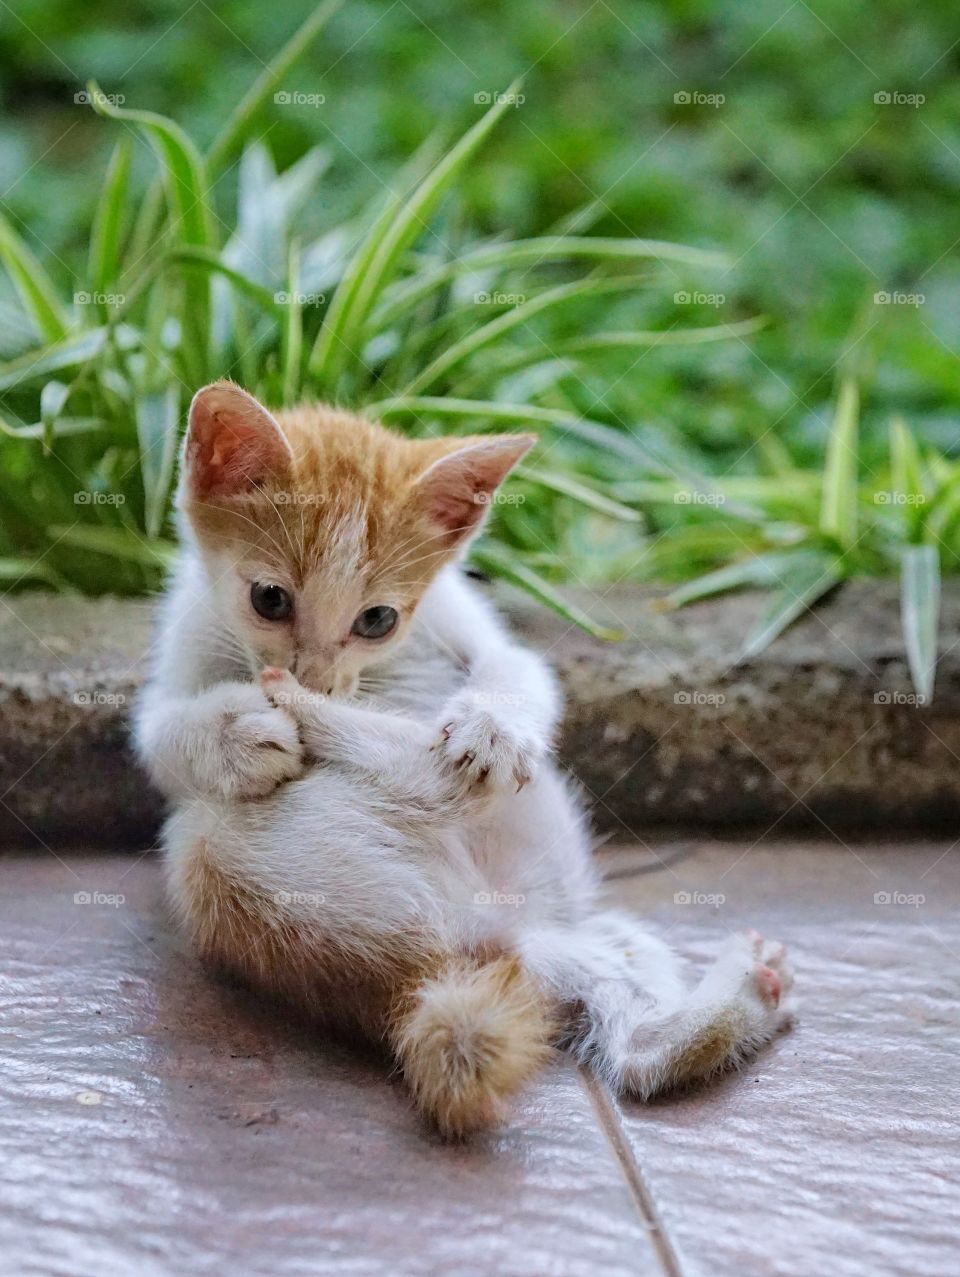 kitten playing his foot